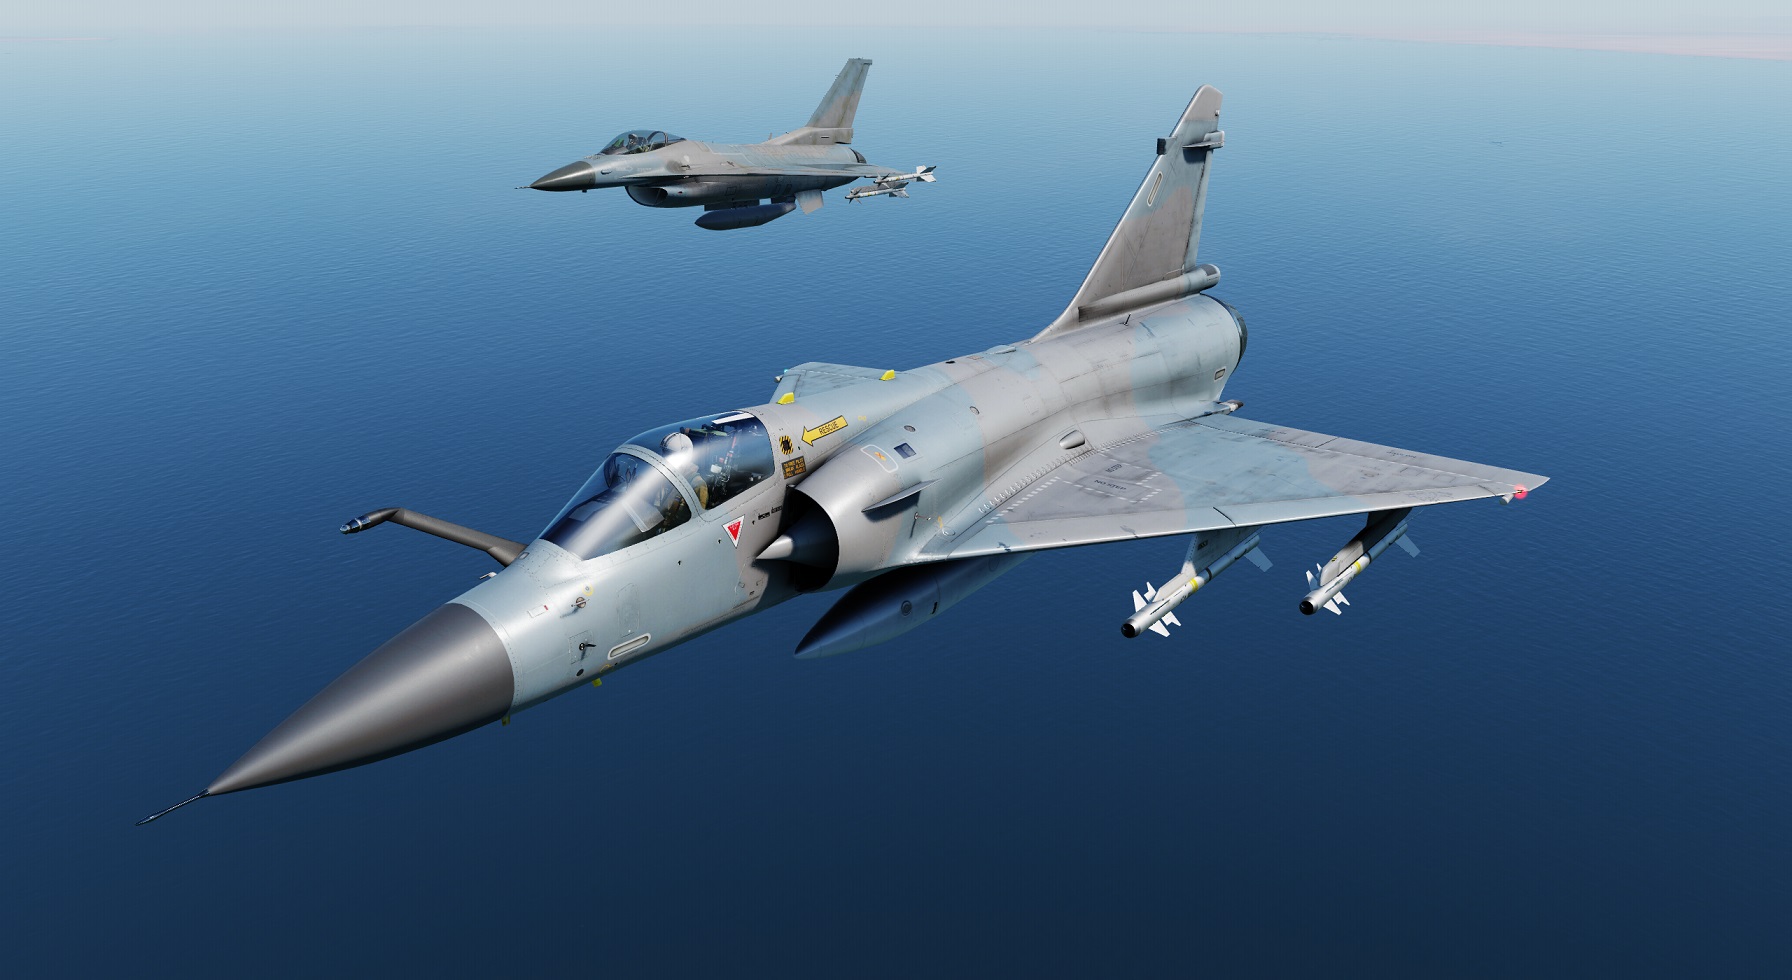 Mercenary Mirage 2k "Varmint" [fictional]